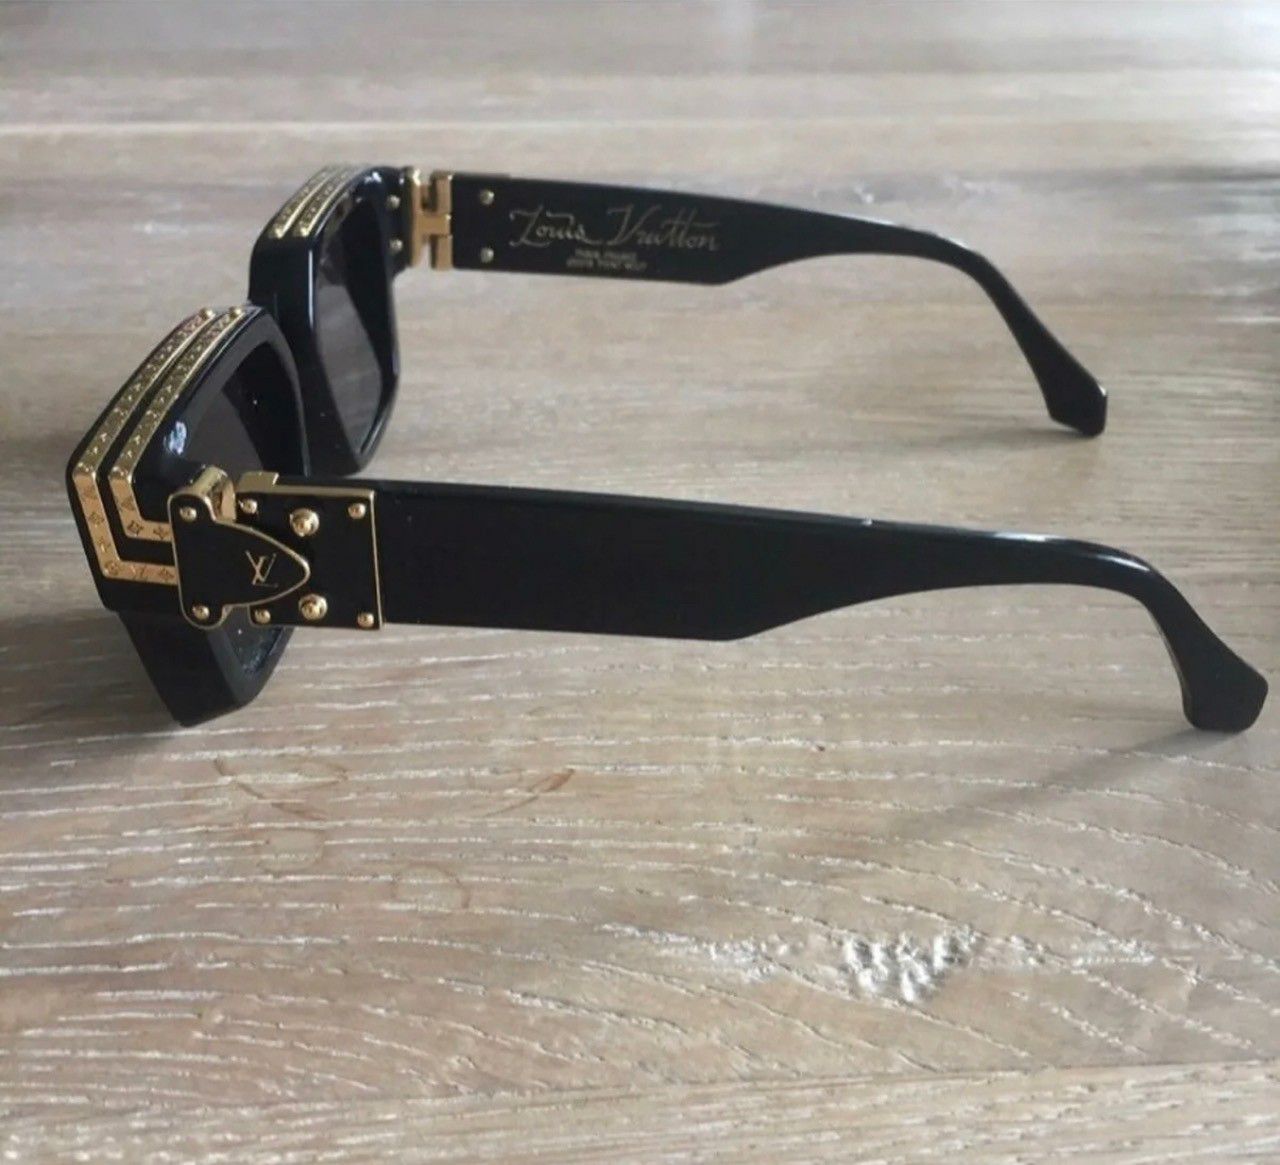 Louis Vuitton 1:1 Millionaire Sunglasses by Virgil Abloh for Sale in ...